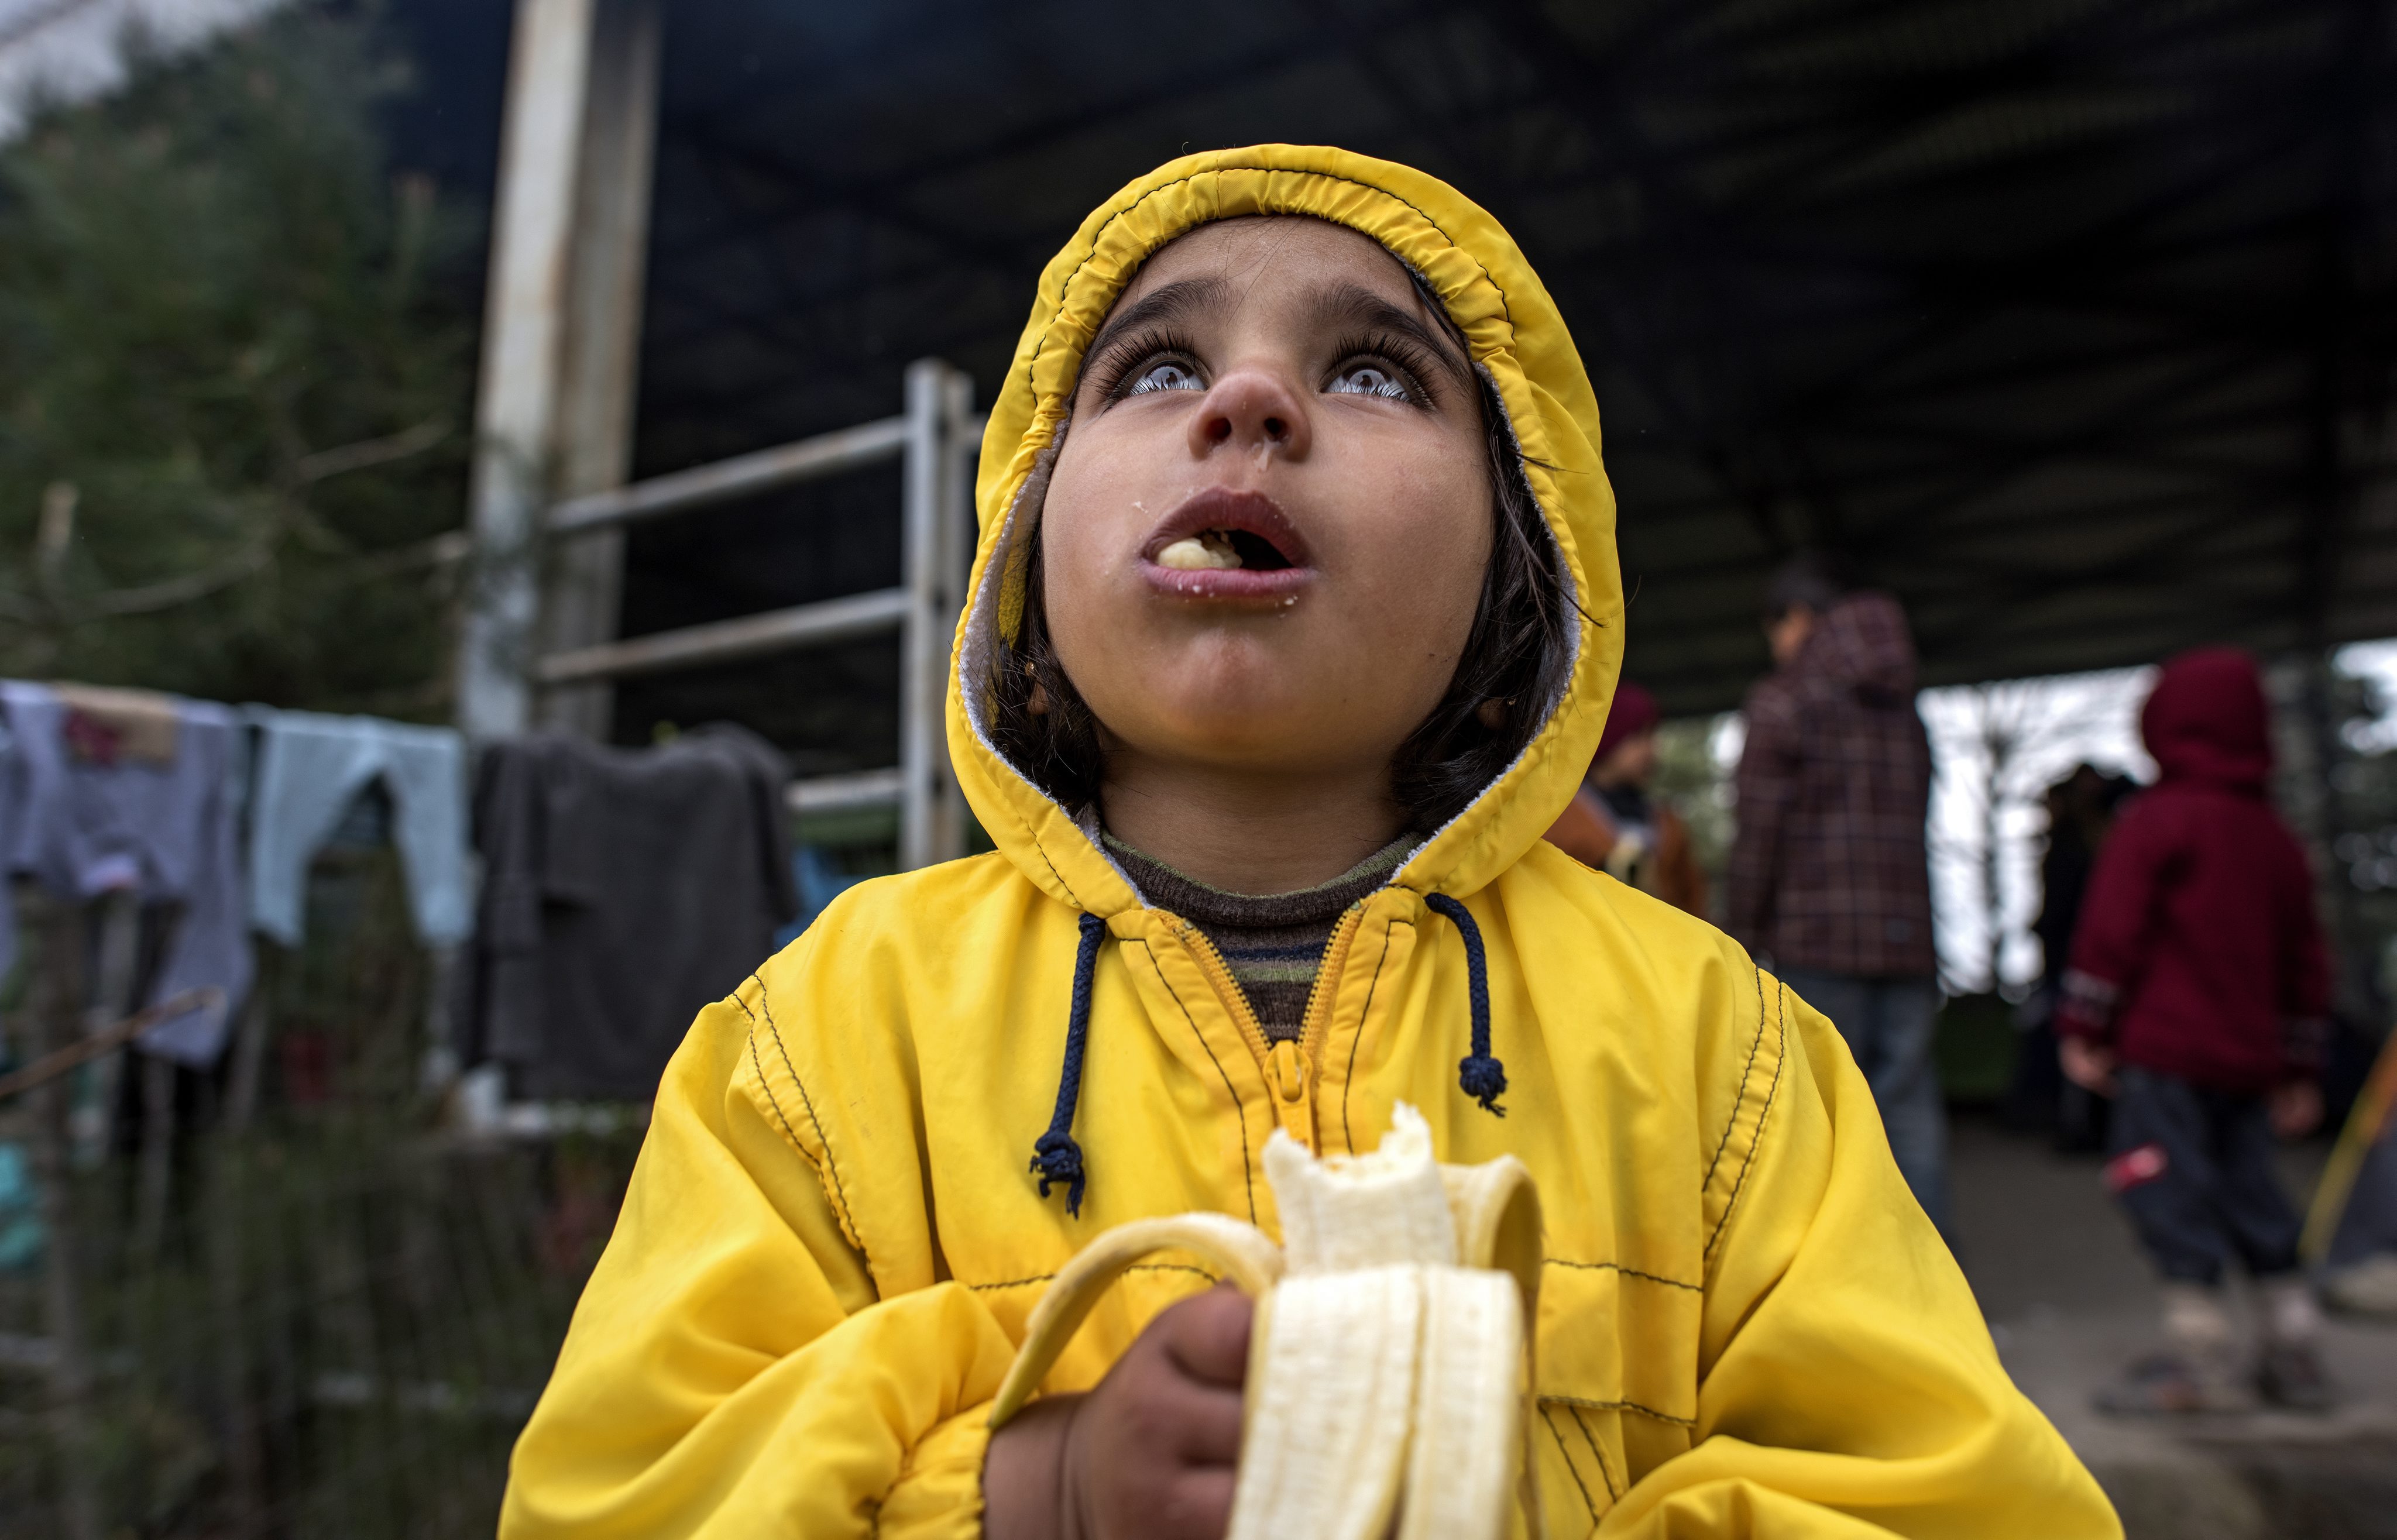 Ειδομένη: Αγρότης όργωνε με τρακτέρ δίπλα στις σκηνές των προσφύγων